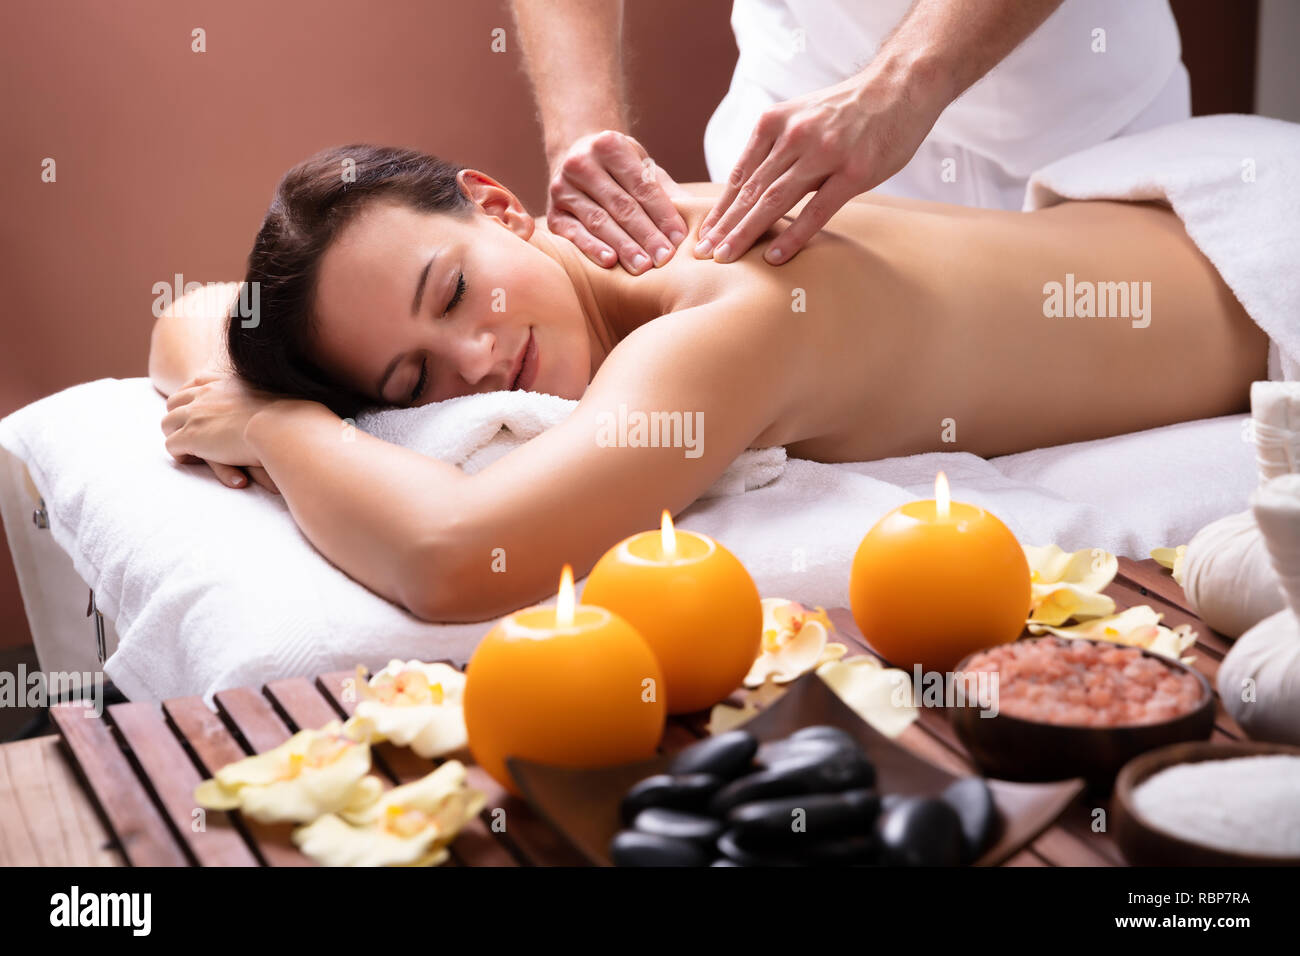 La main du thérapeute de sexe masculin massage de l'épaule de jeune femme détendue Banque D'Images